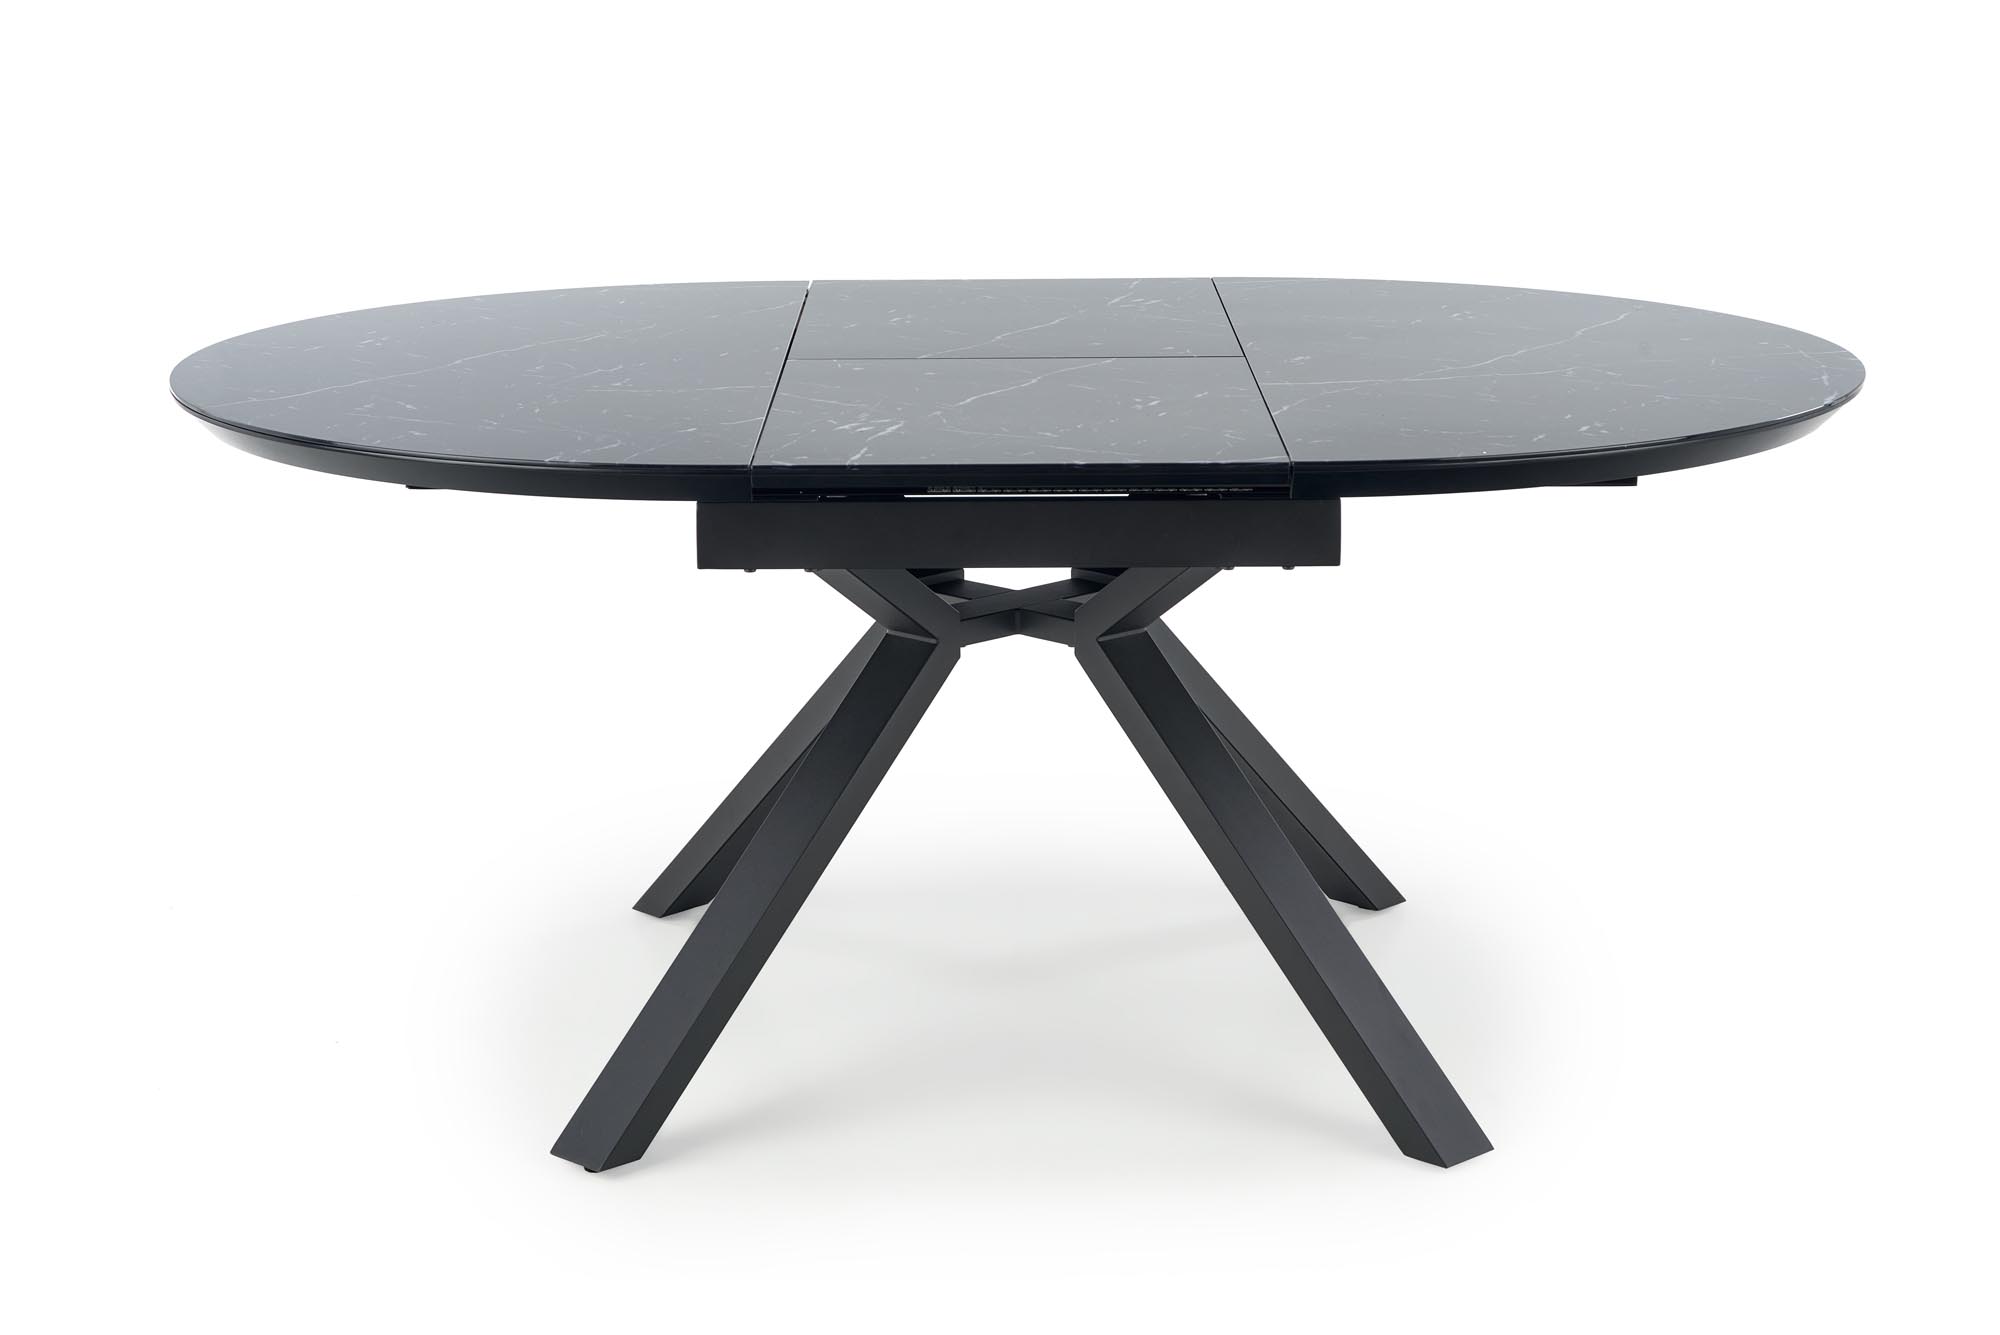 Rozkladací jedálenský stôl VERTIGO 130-180x130 cm - čierny mramor / čierna vertigo Stôl rozkladany, Pracovná doska - Čierny mramor, Nohy - Čierny